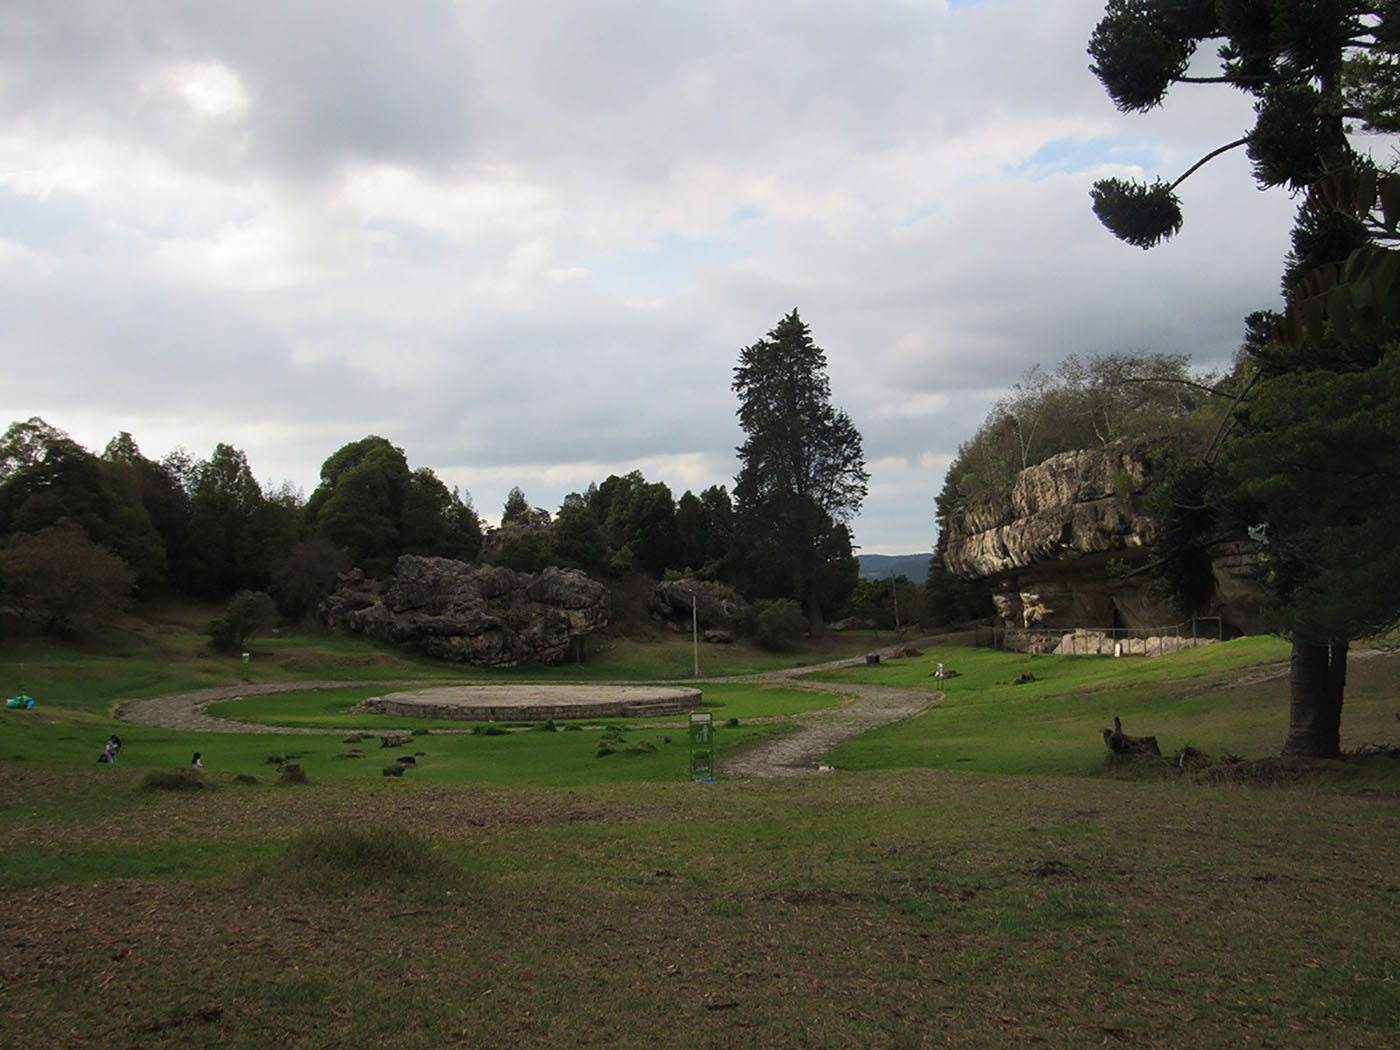 Parque Arqueológico Piedras del Tunjo, un lugar emblemático para el municipio de Facatativá por su relevancia ancestral para la región. Foto: archivo Unimedios.